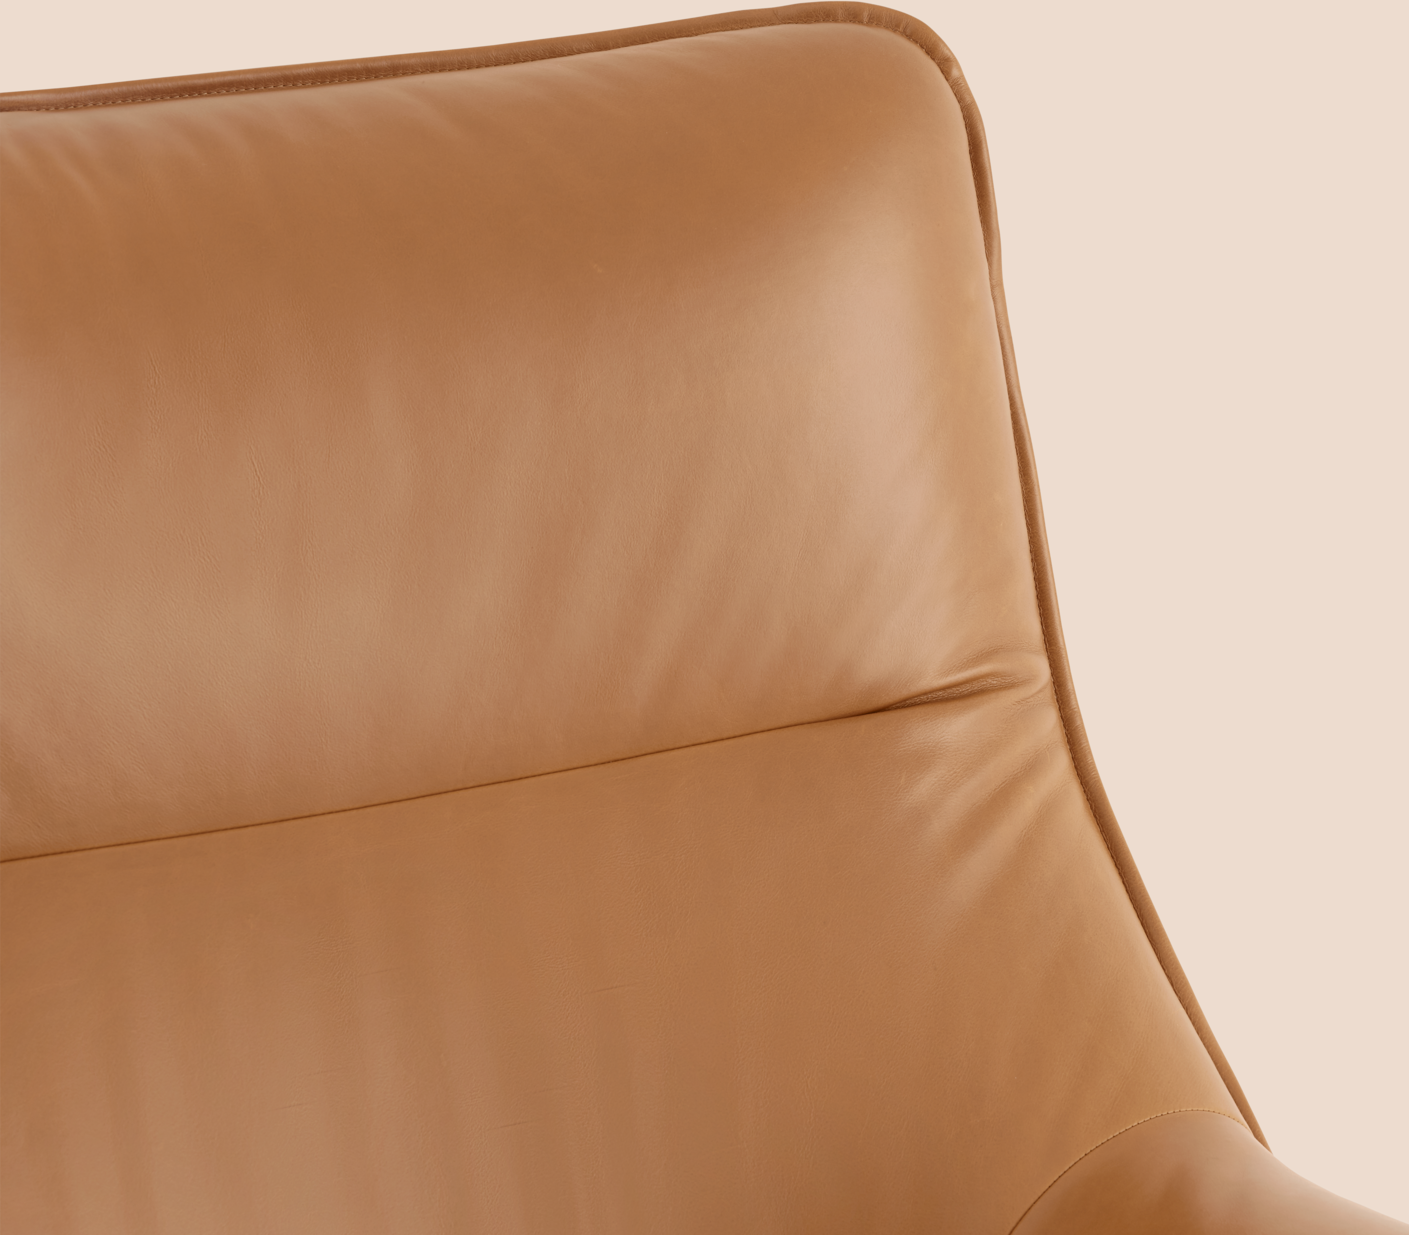 Doze Loungesessel in Braun / Chrom präsentiert im Onlineshop von KAQTU Design AG. Sessel mit Armlehnen ist von Muuto